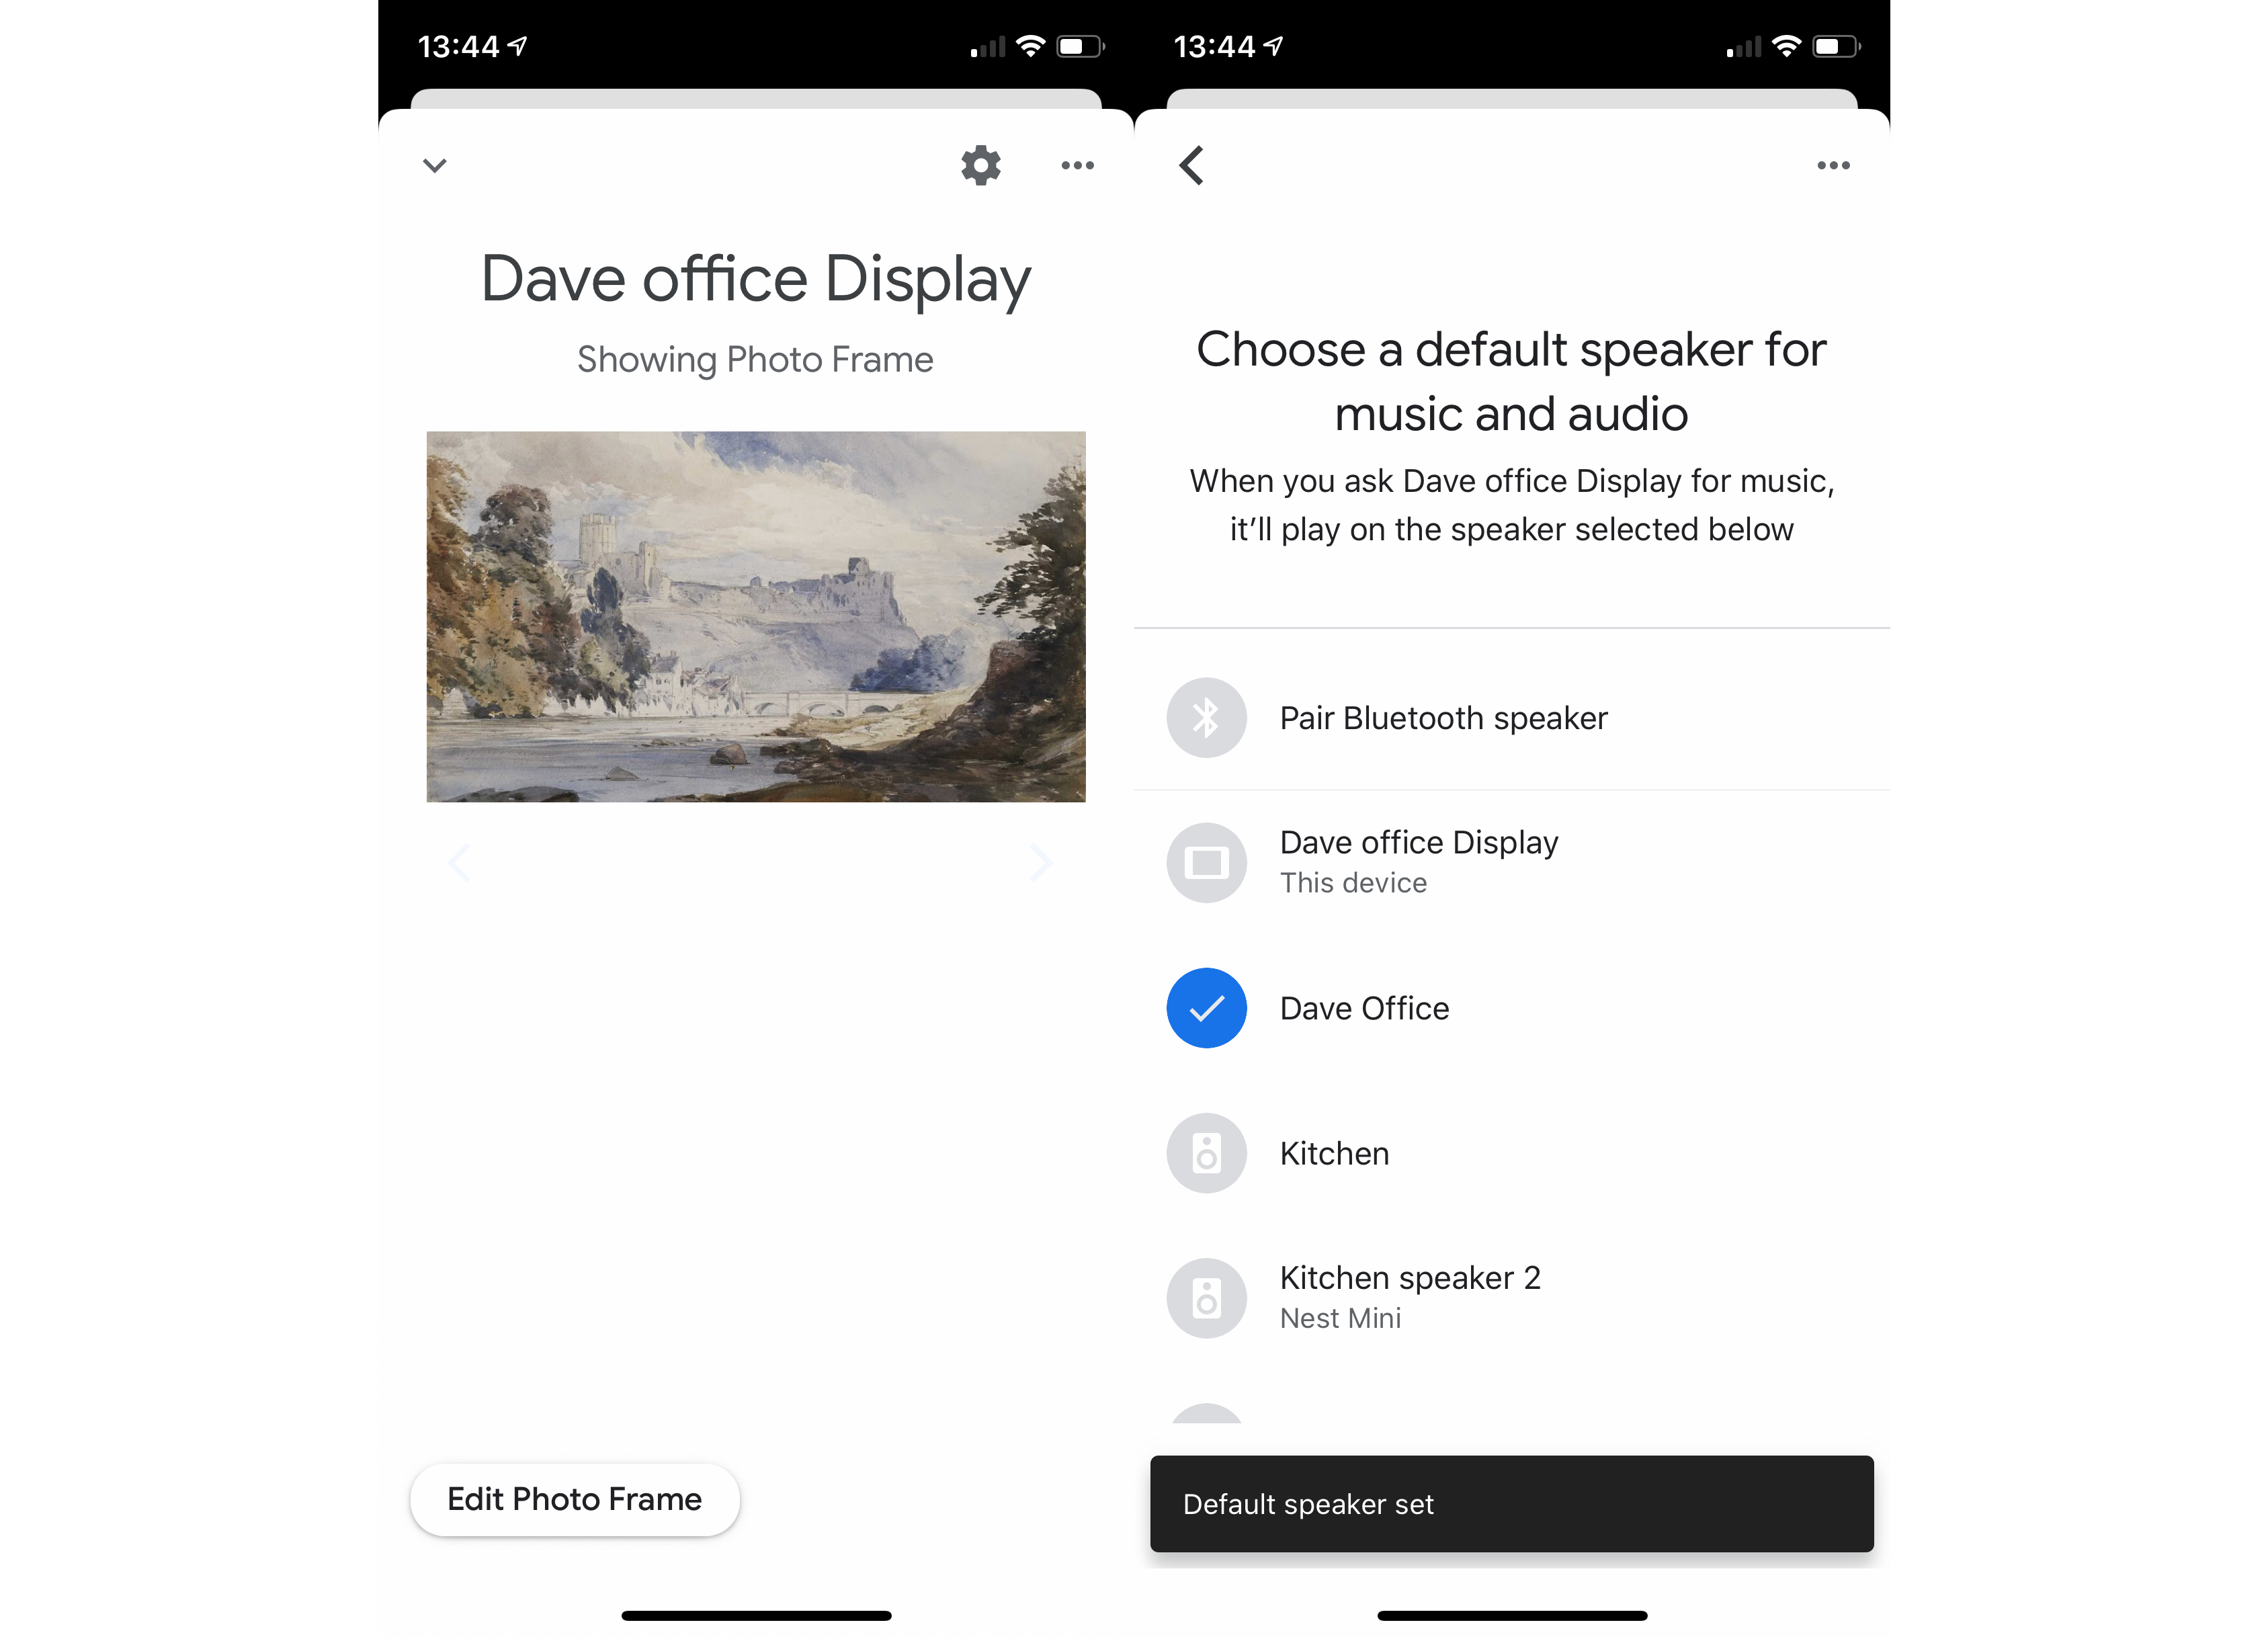 2. Google Assistant Choose Default Speaker